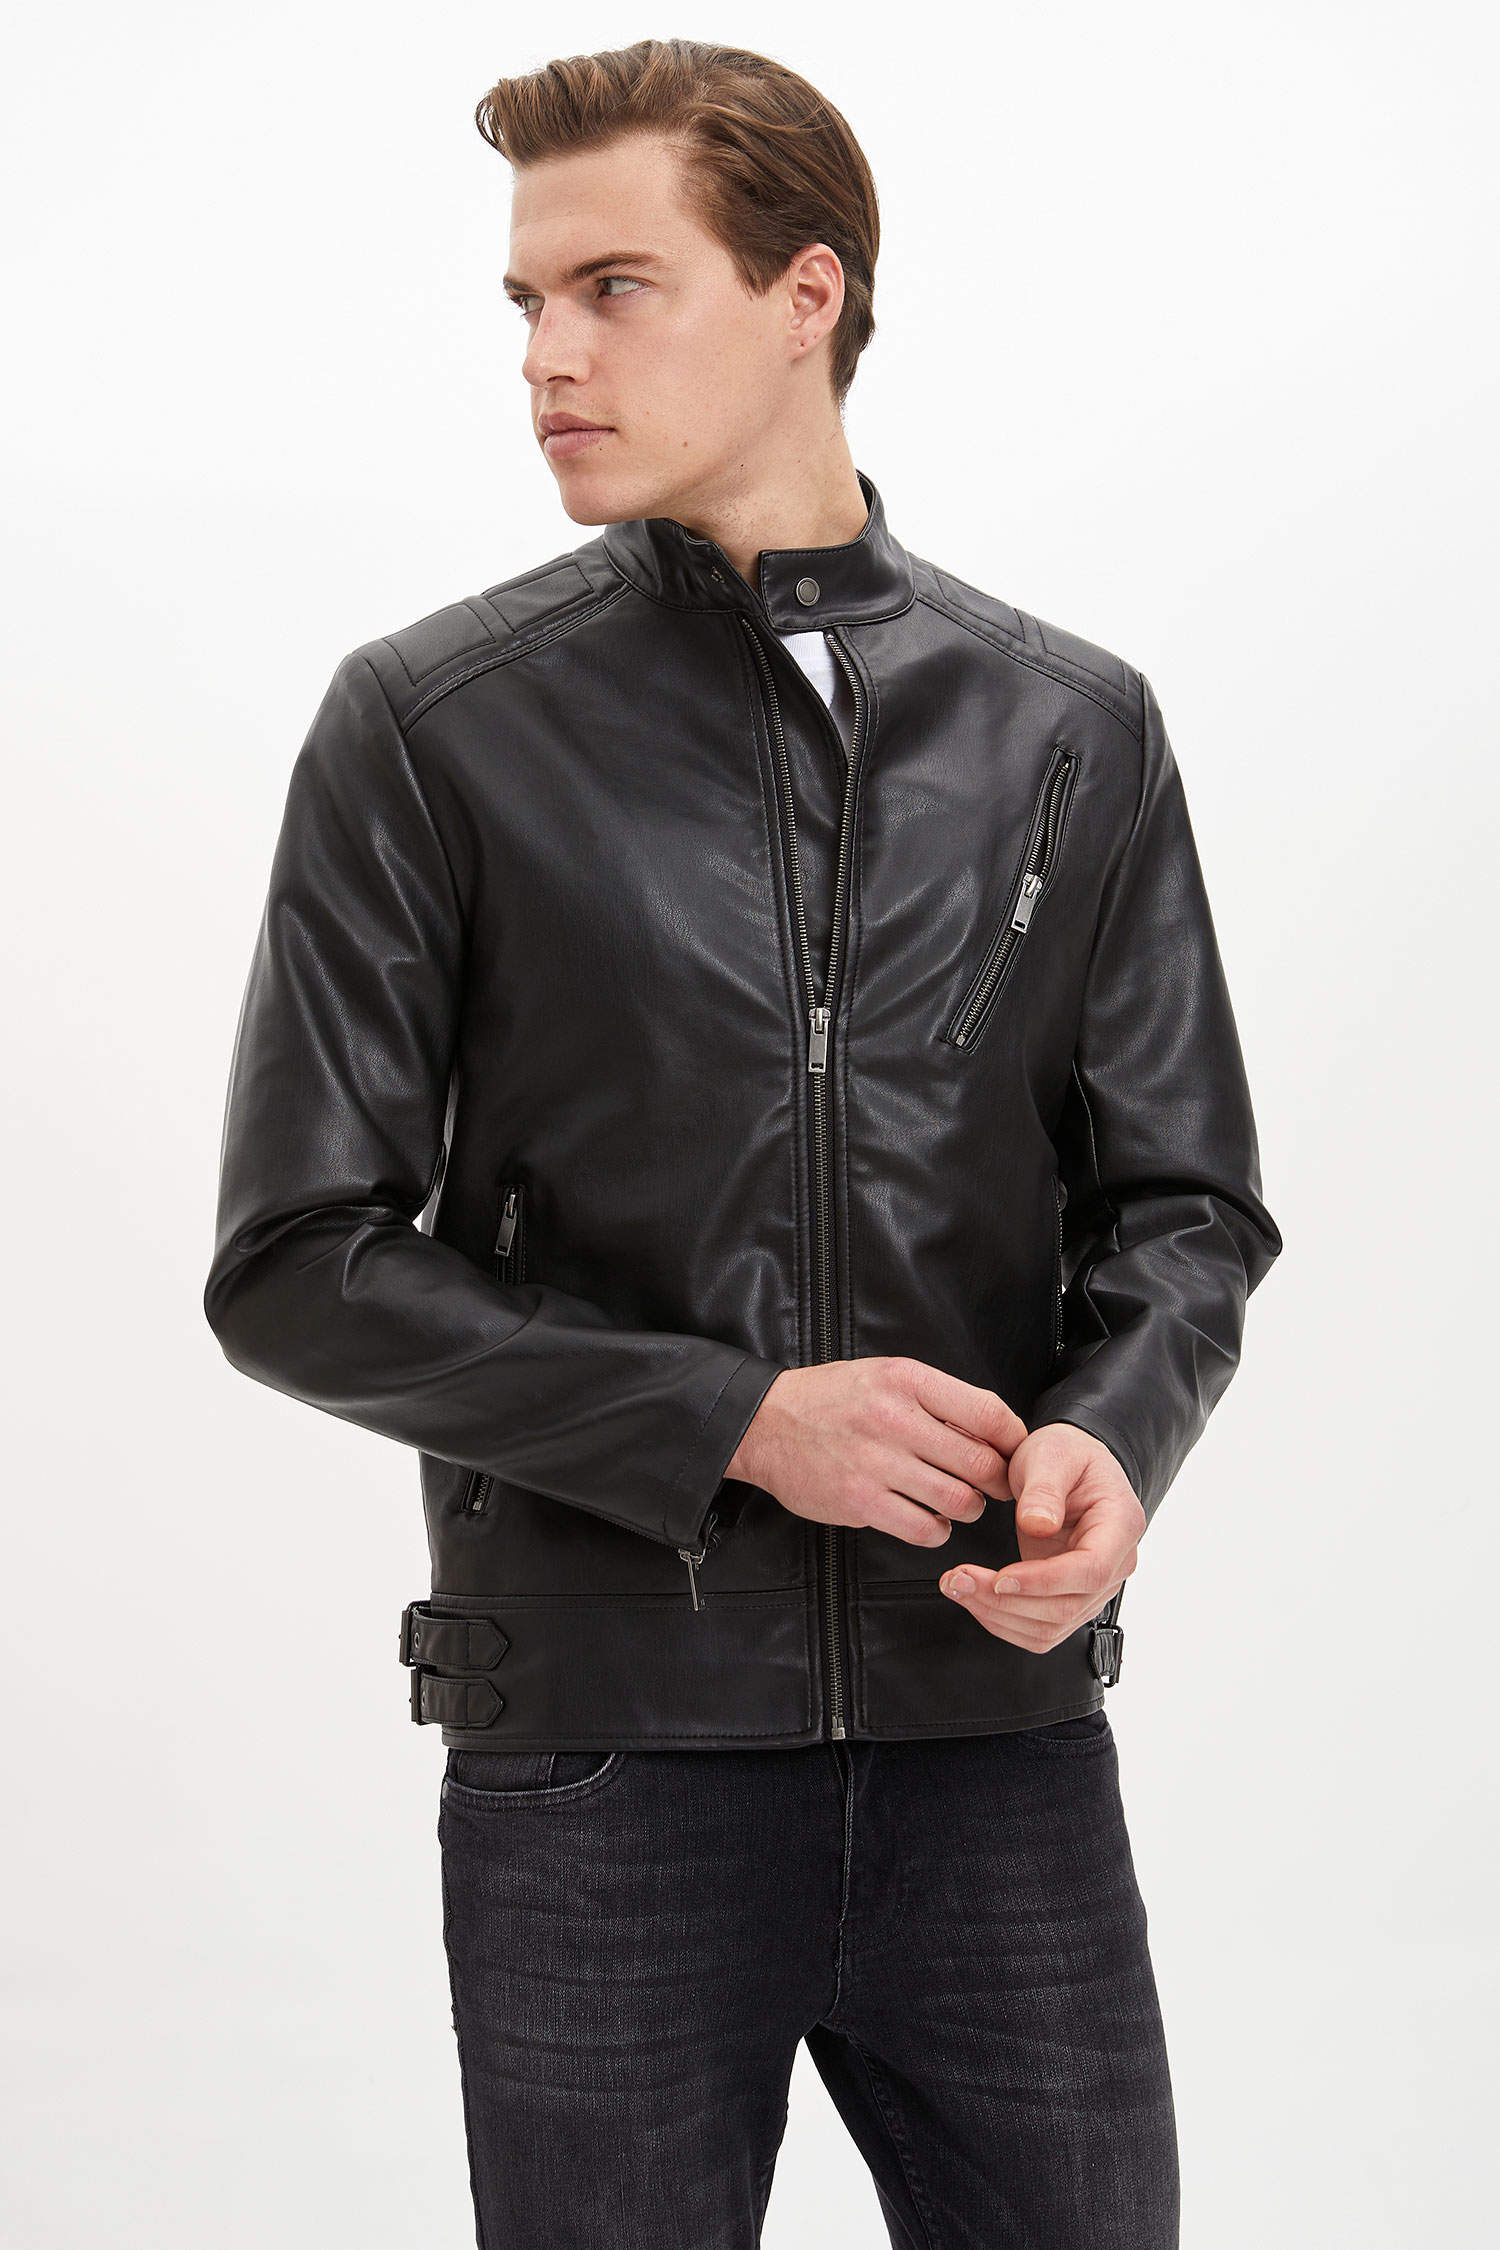 kütle rasathane Onarım mümkün  Black MAN Faux Leather Jacket 1165067 | DeFacto